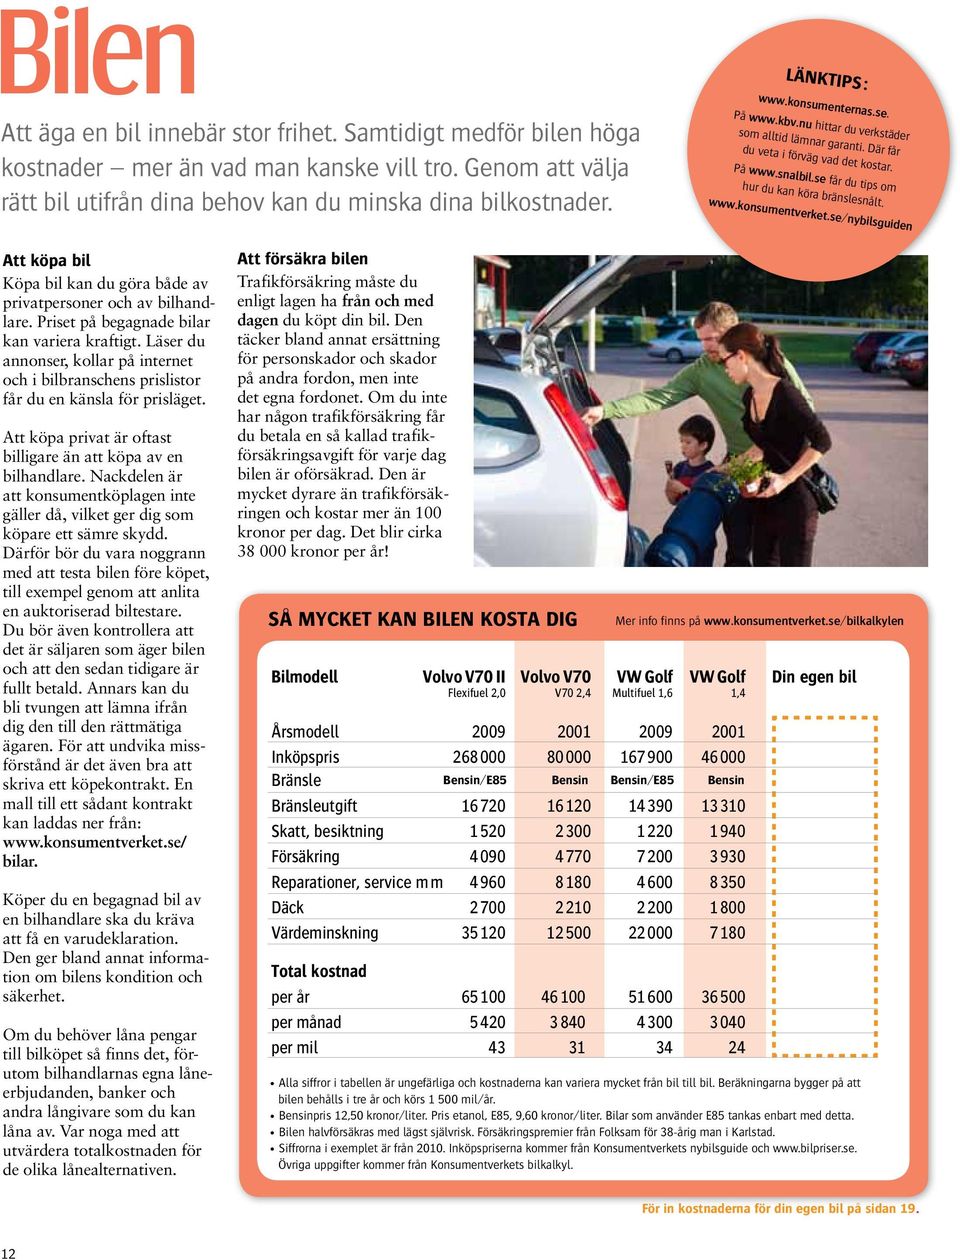 www.konsumentverket.se/nybilsguiden Att köpa bil Köpa bil kan du göra både av privatpersoner och av bilhandlare. Priset på begagnade bilar kan variera kraftigt.